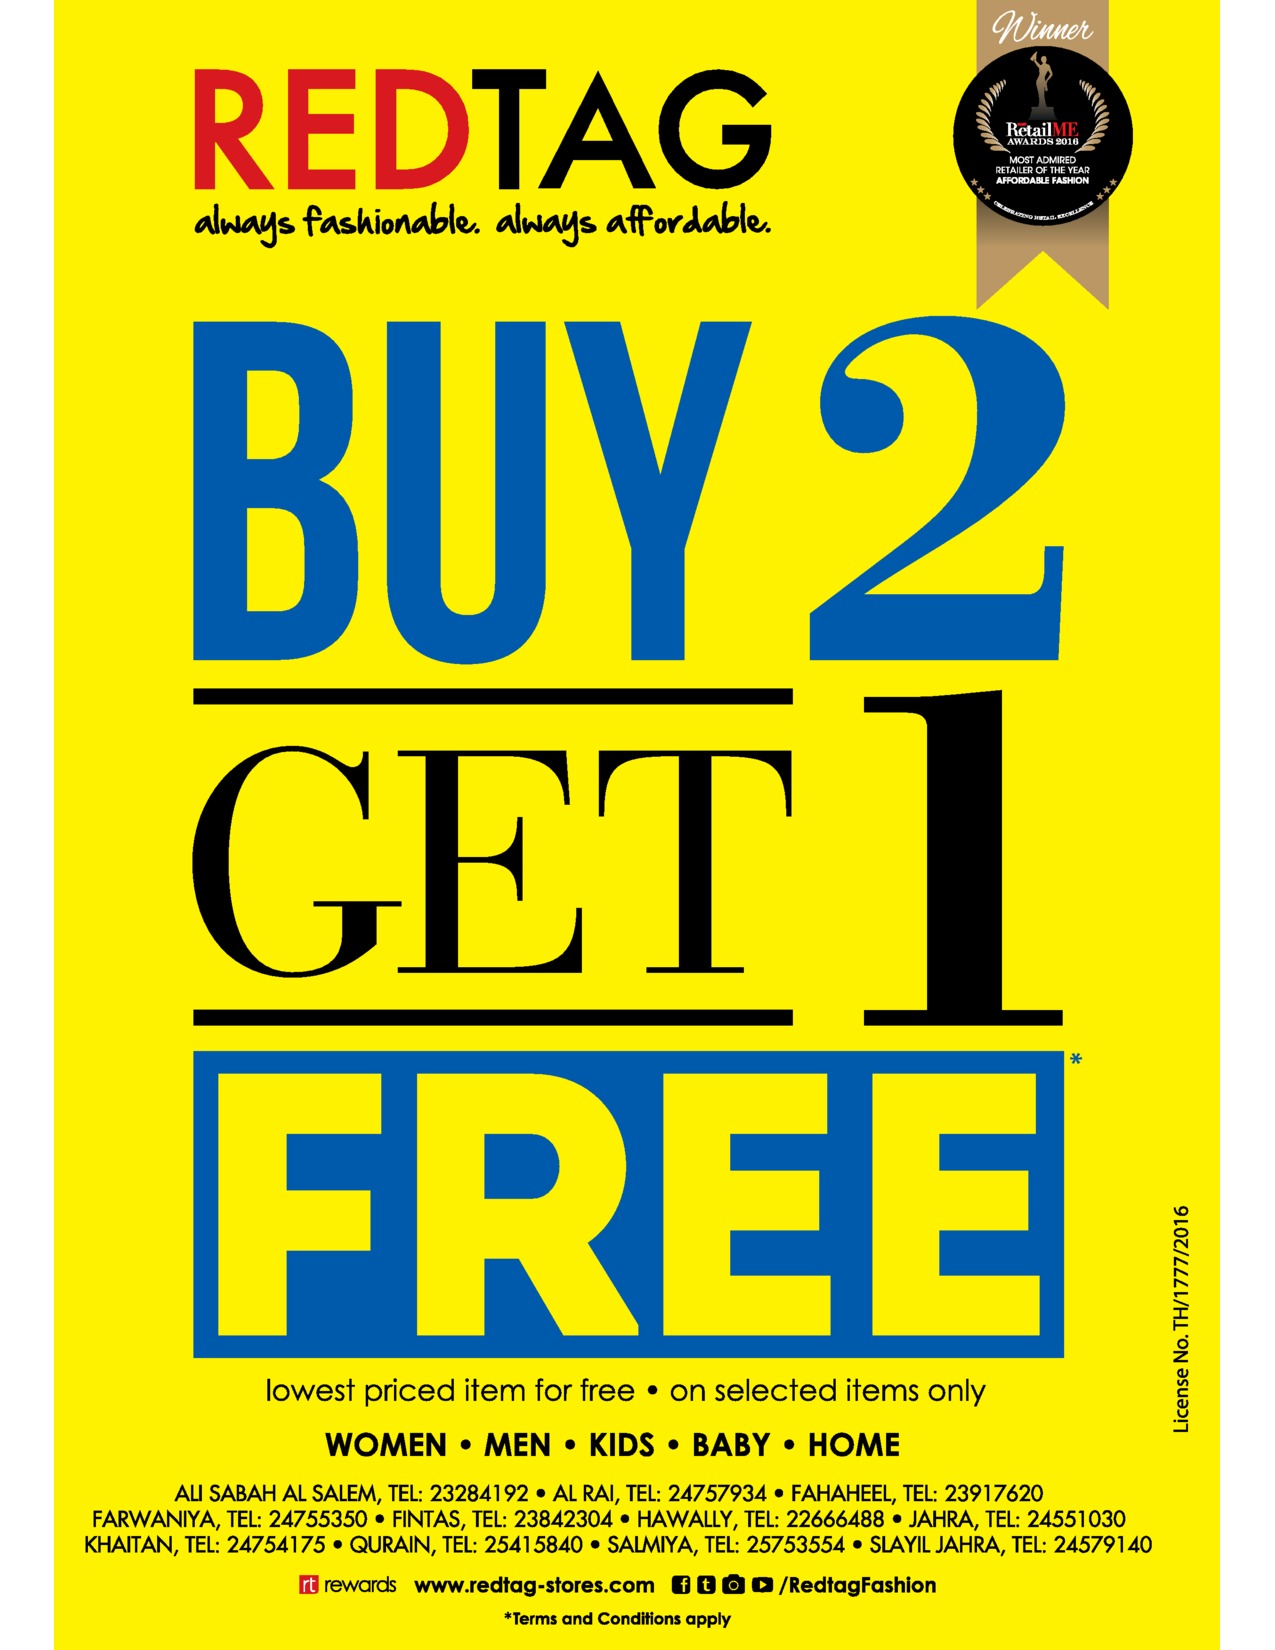 buy-2-get-1-free in kuwait